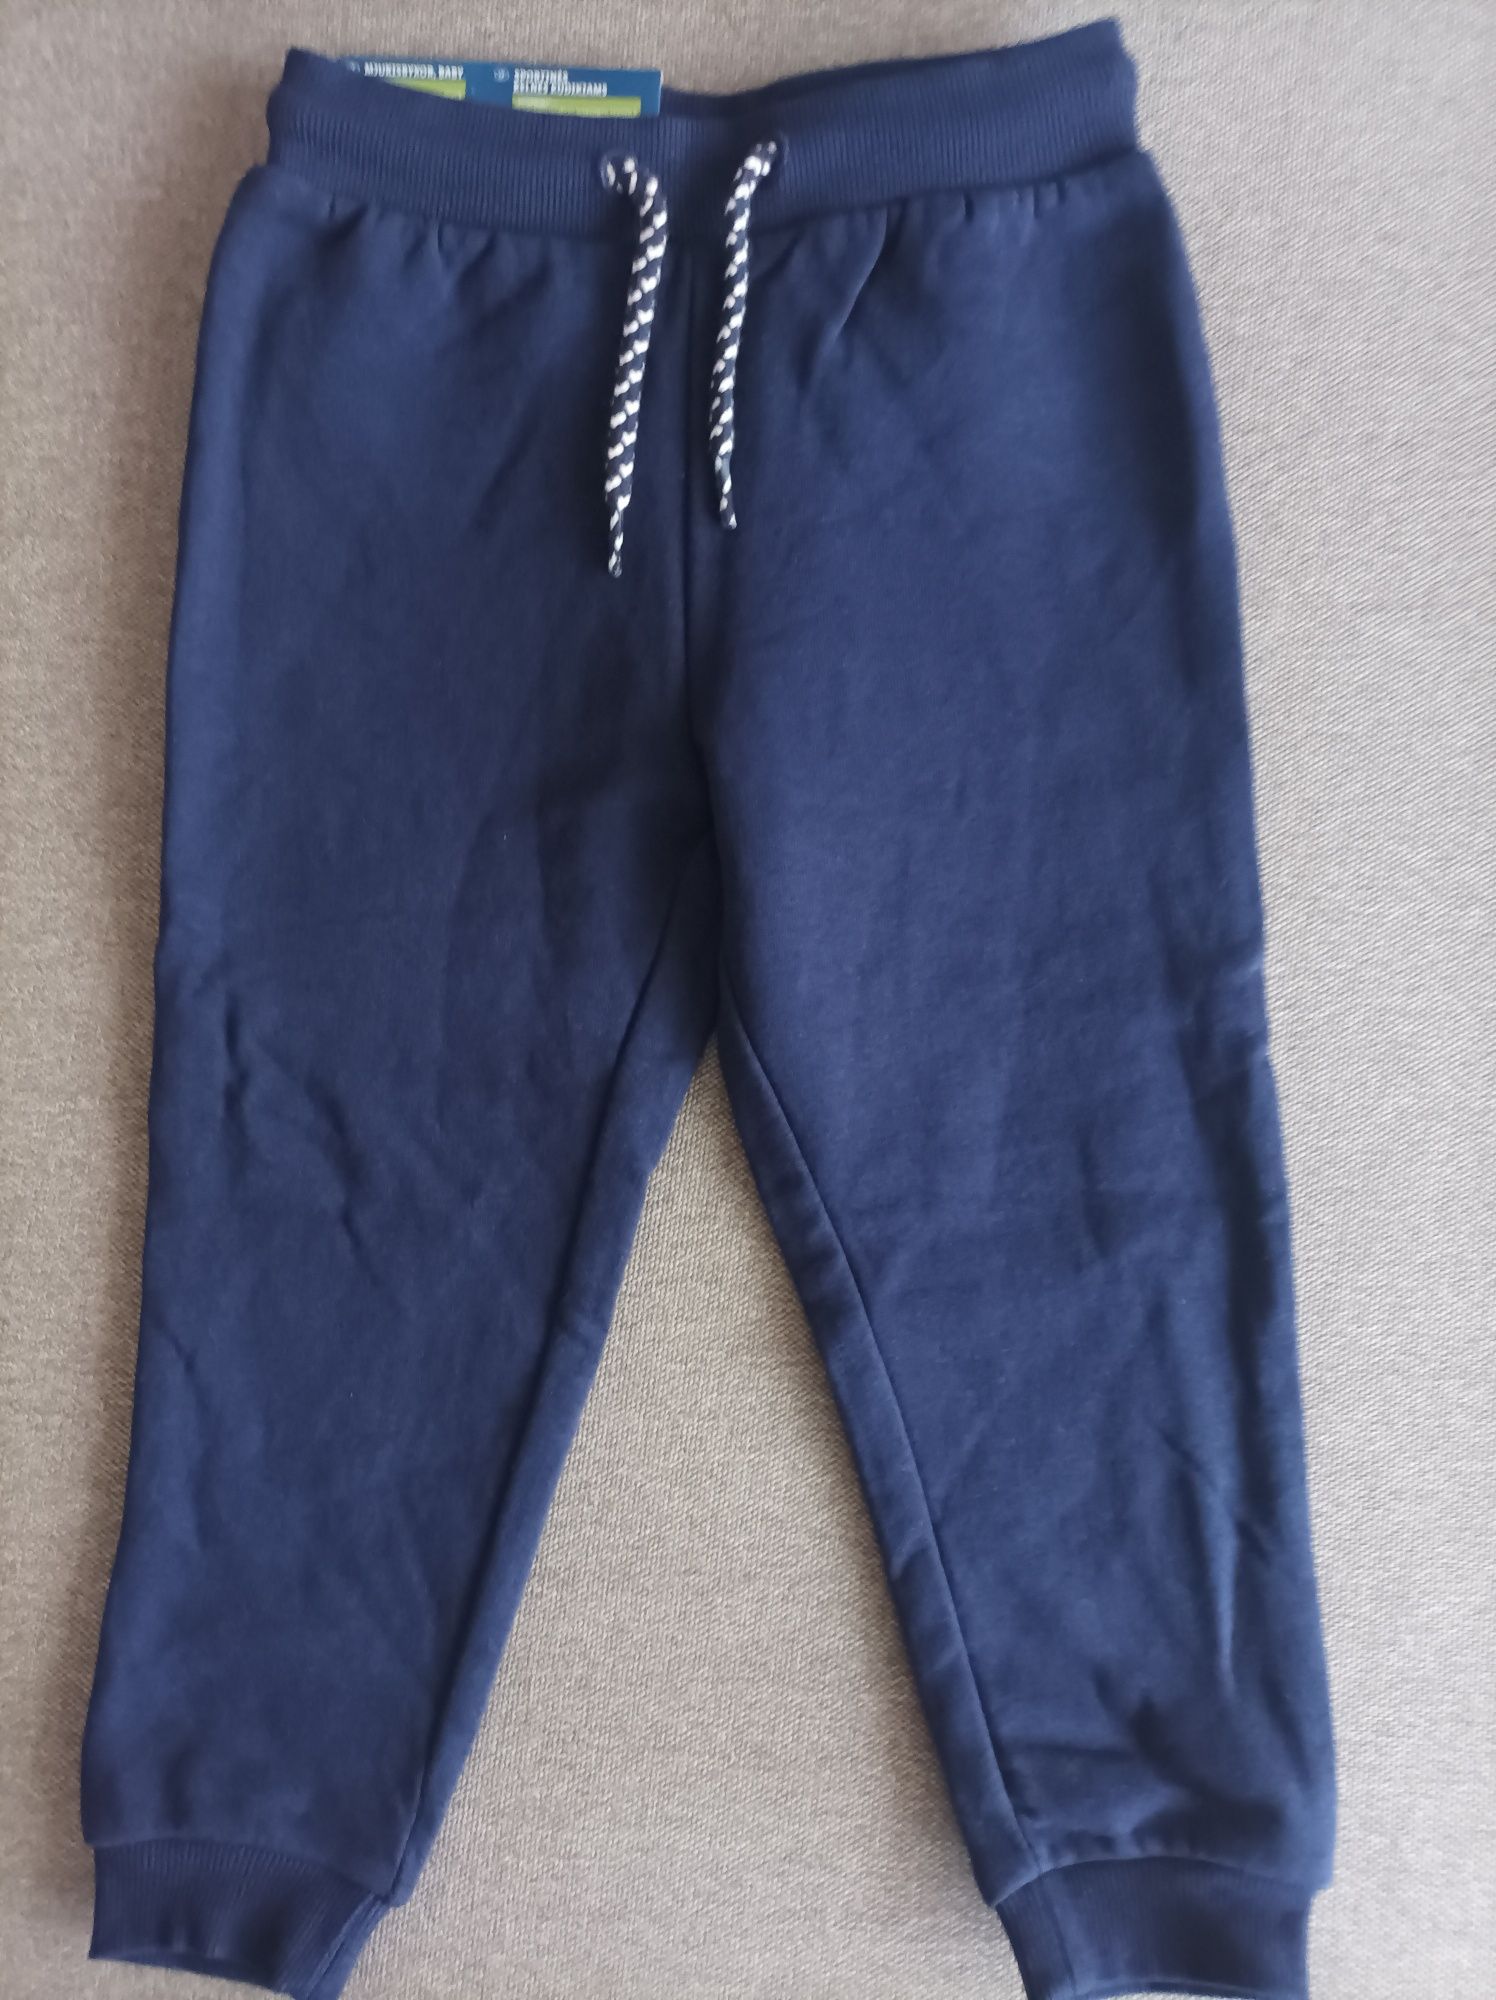 Спортивные штаны, джоггеры, Лупилу, 86-92 см, 12-24 месяца